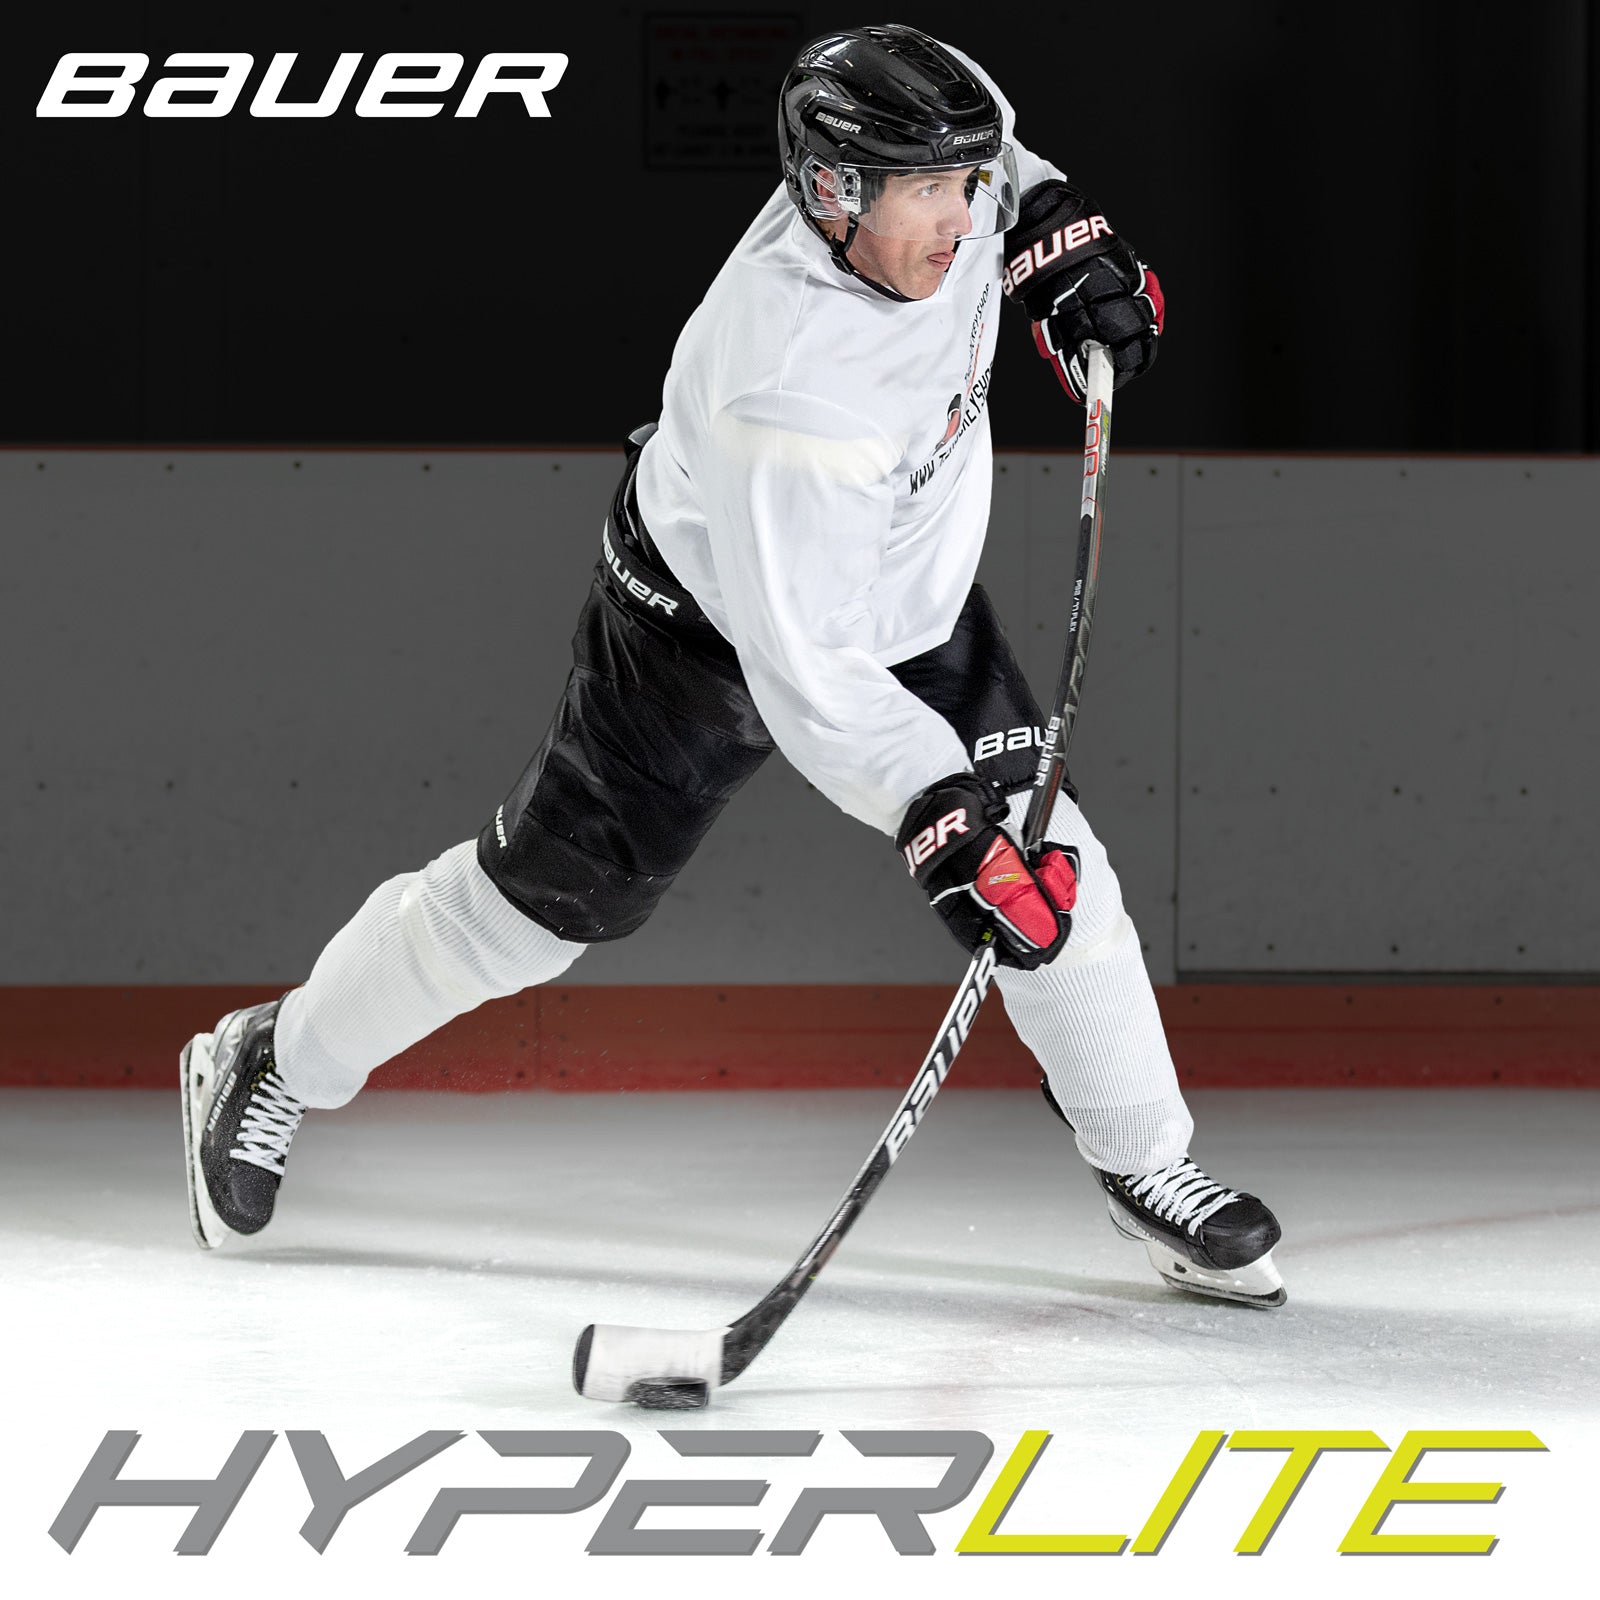 Bauer-hyperlite-stick-on-ice-feature.jpg?v=1627608407